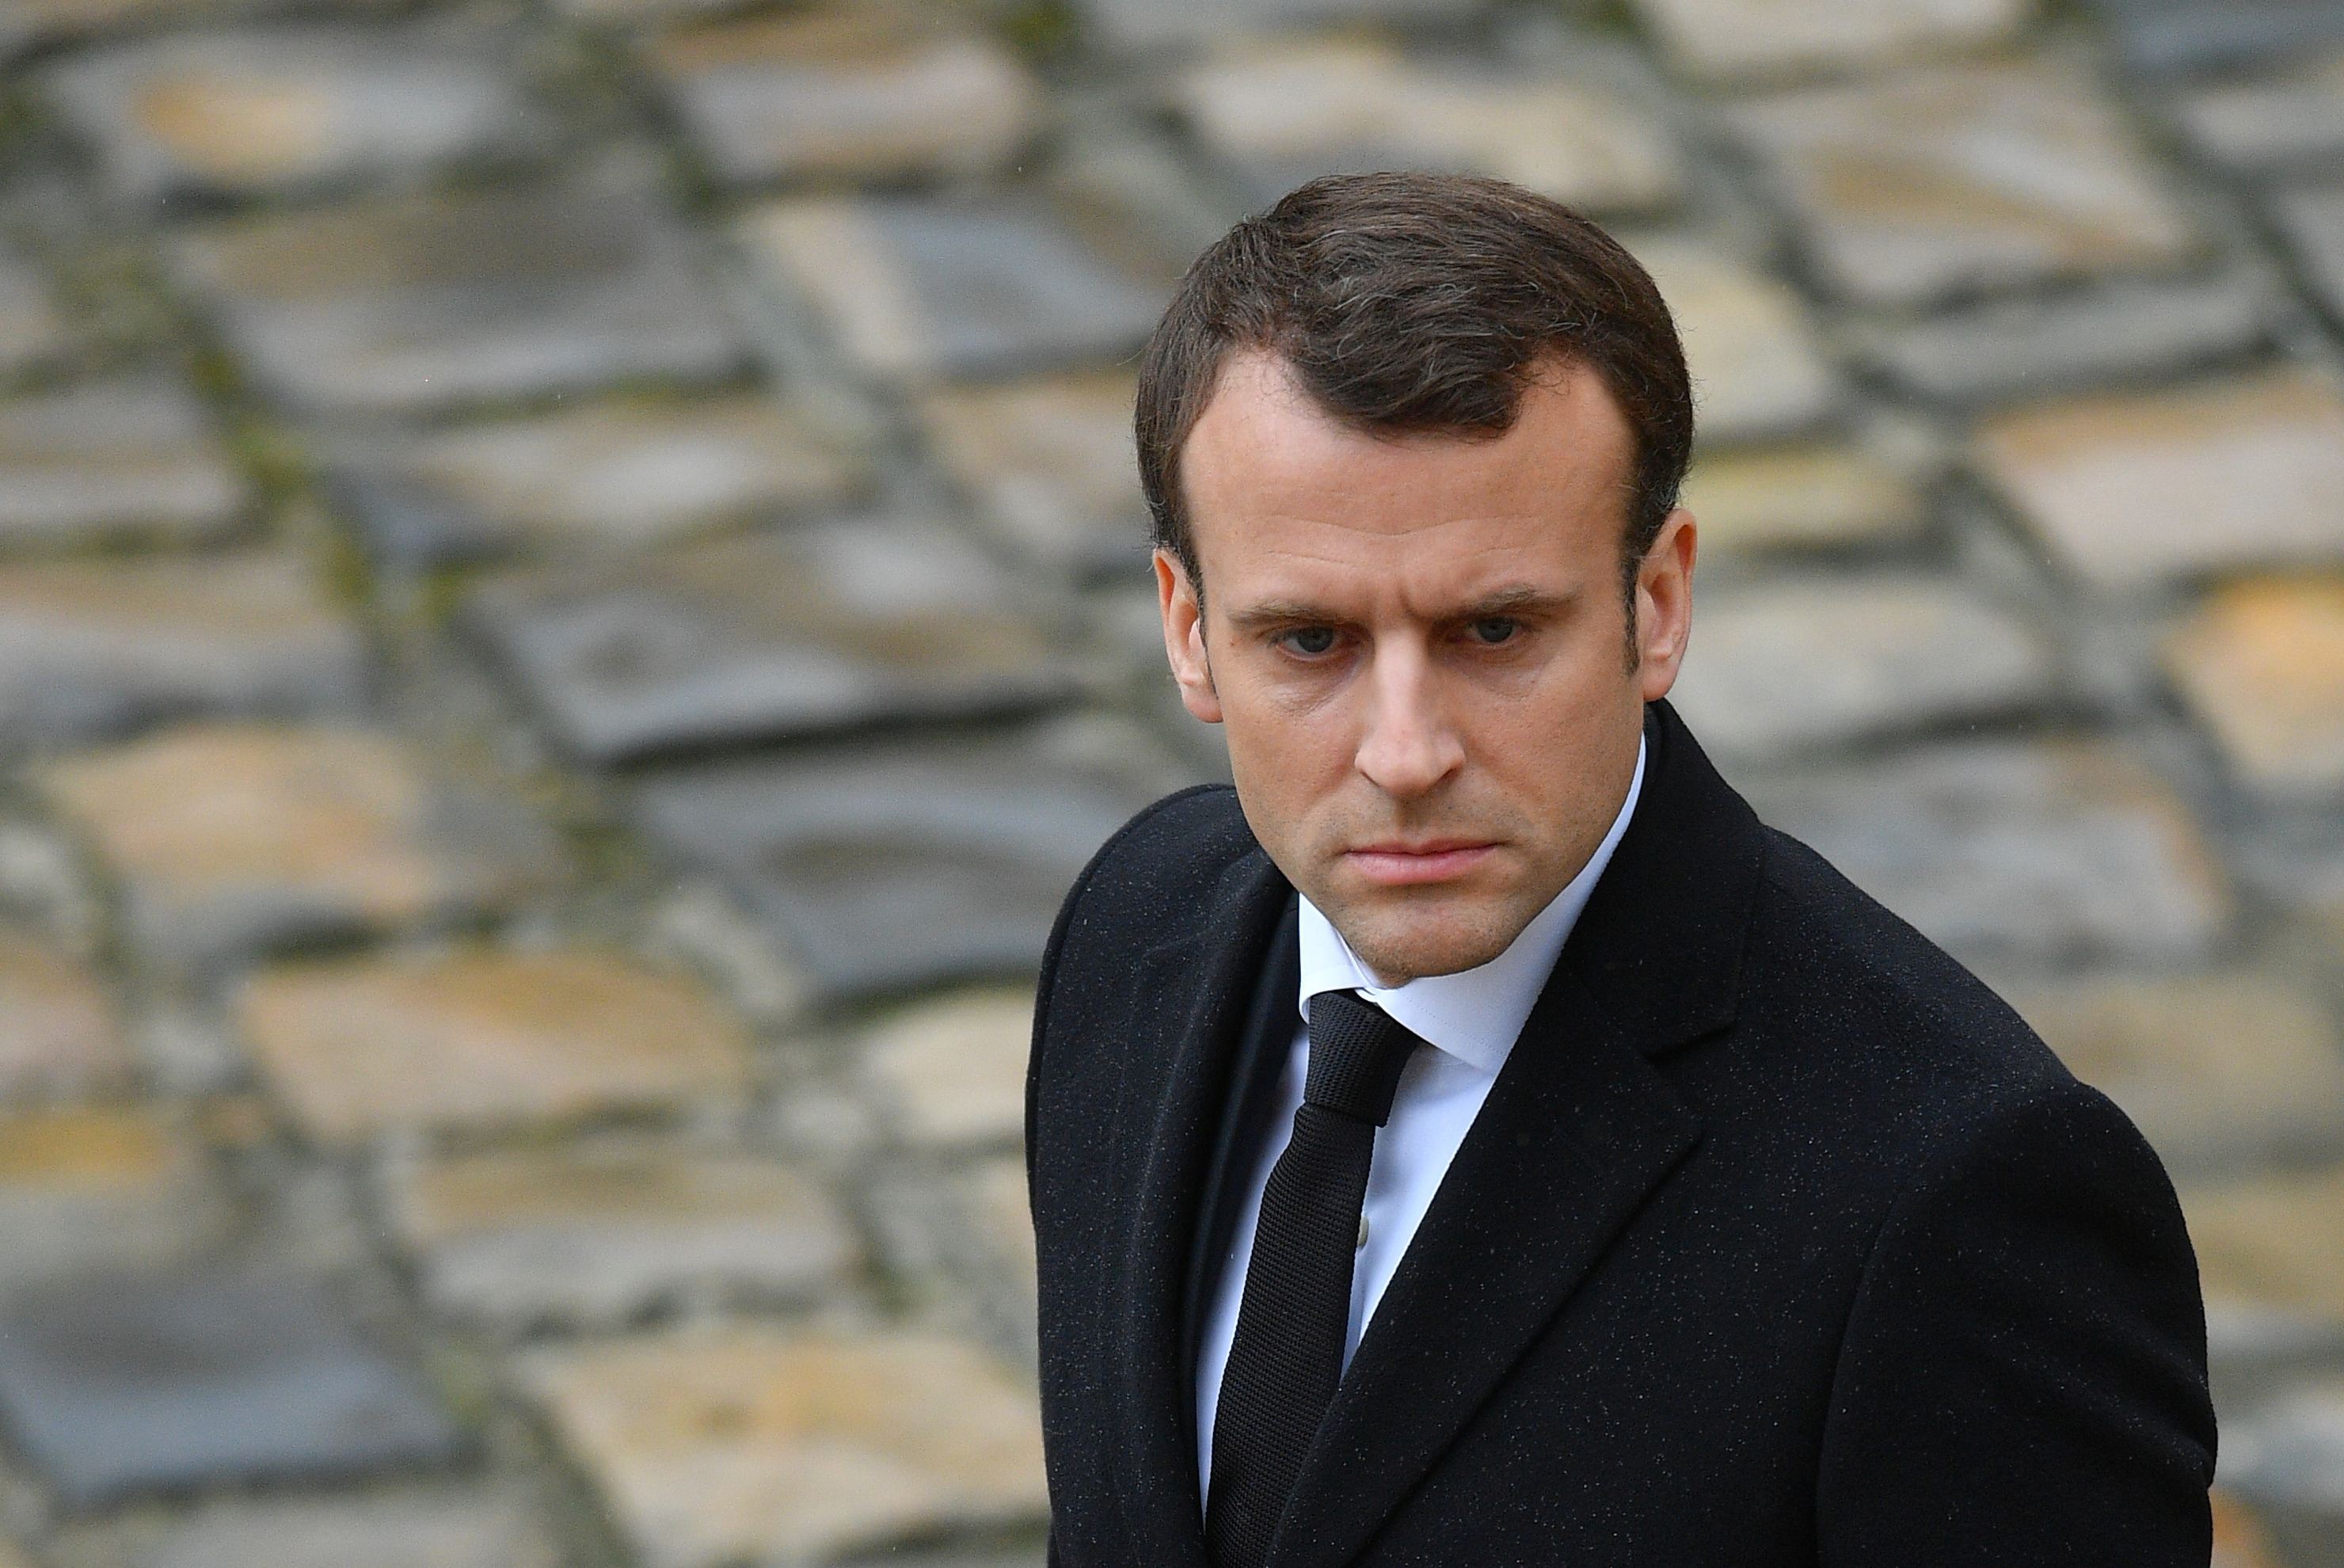 Alegeri în Franţa: Macron duce o bătălie dură pentru controlul parlamentului